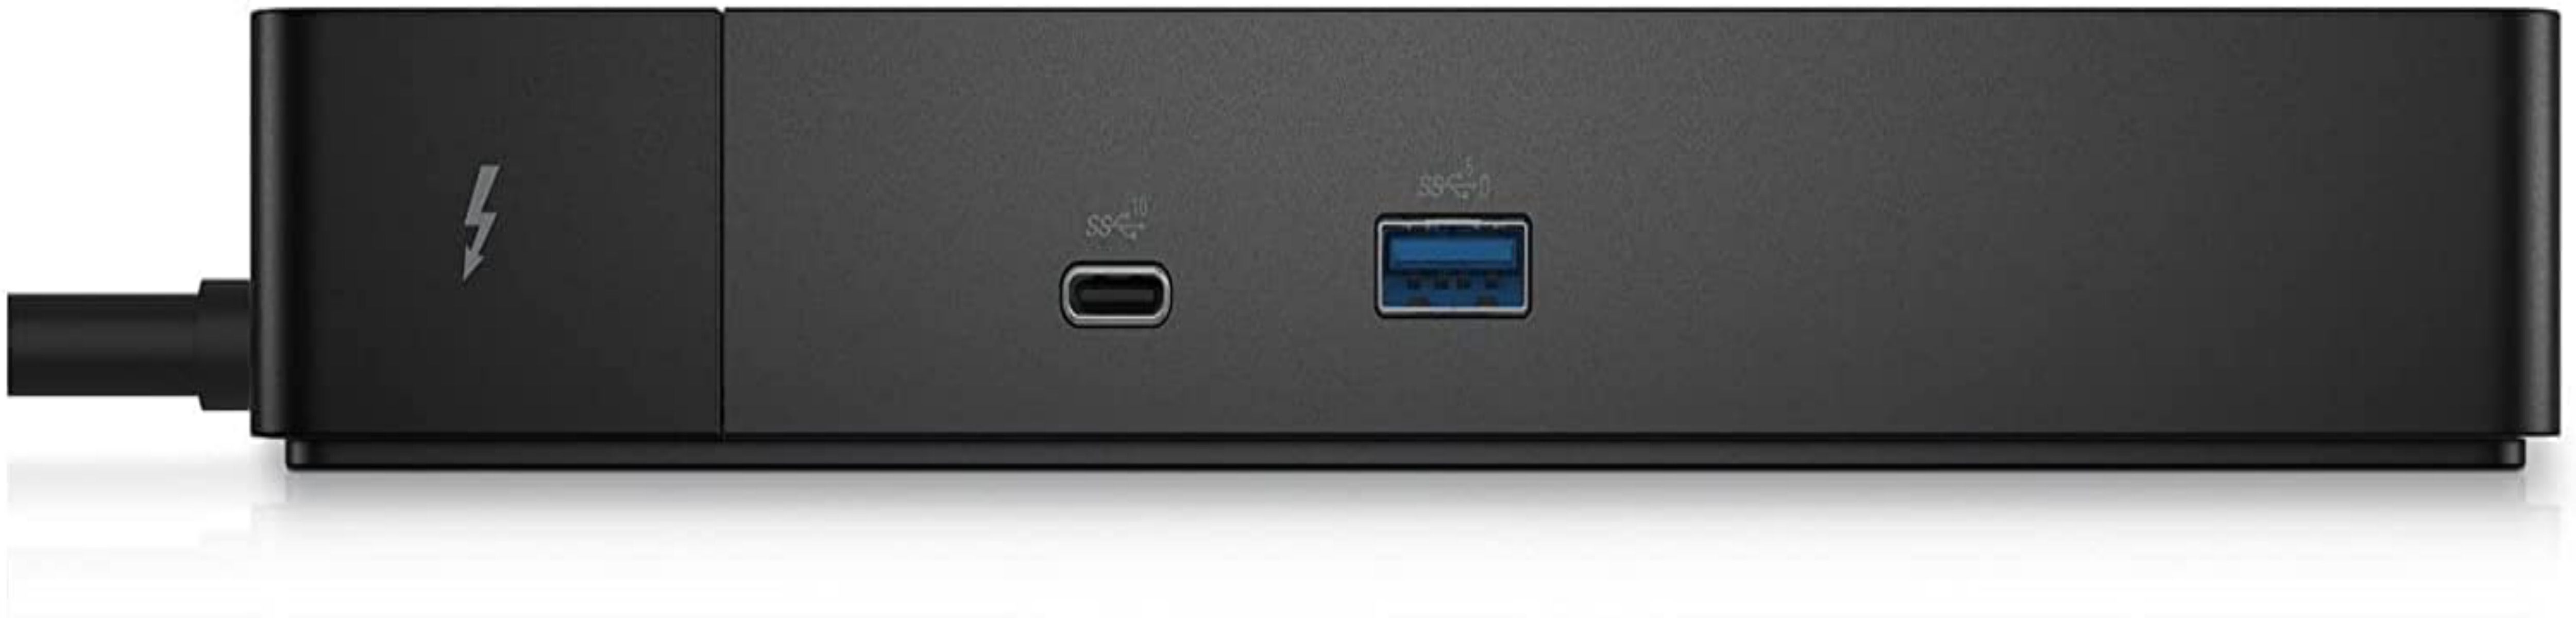 Hình ảnh mặt trước của đế cắm Dell thunderbolt 4 màu đen hiển thị các cổng ethernet và USB-C 3.2 Gen 2